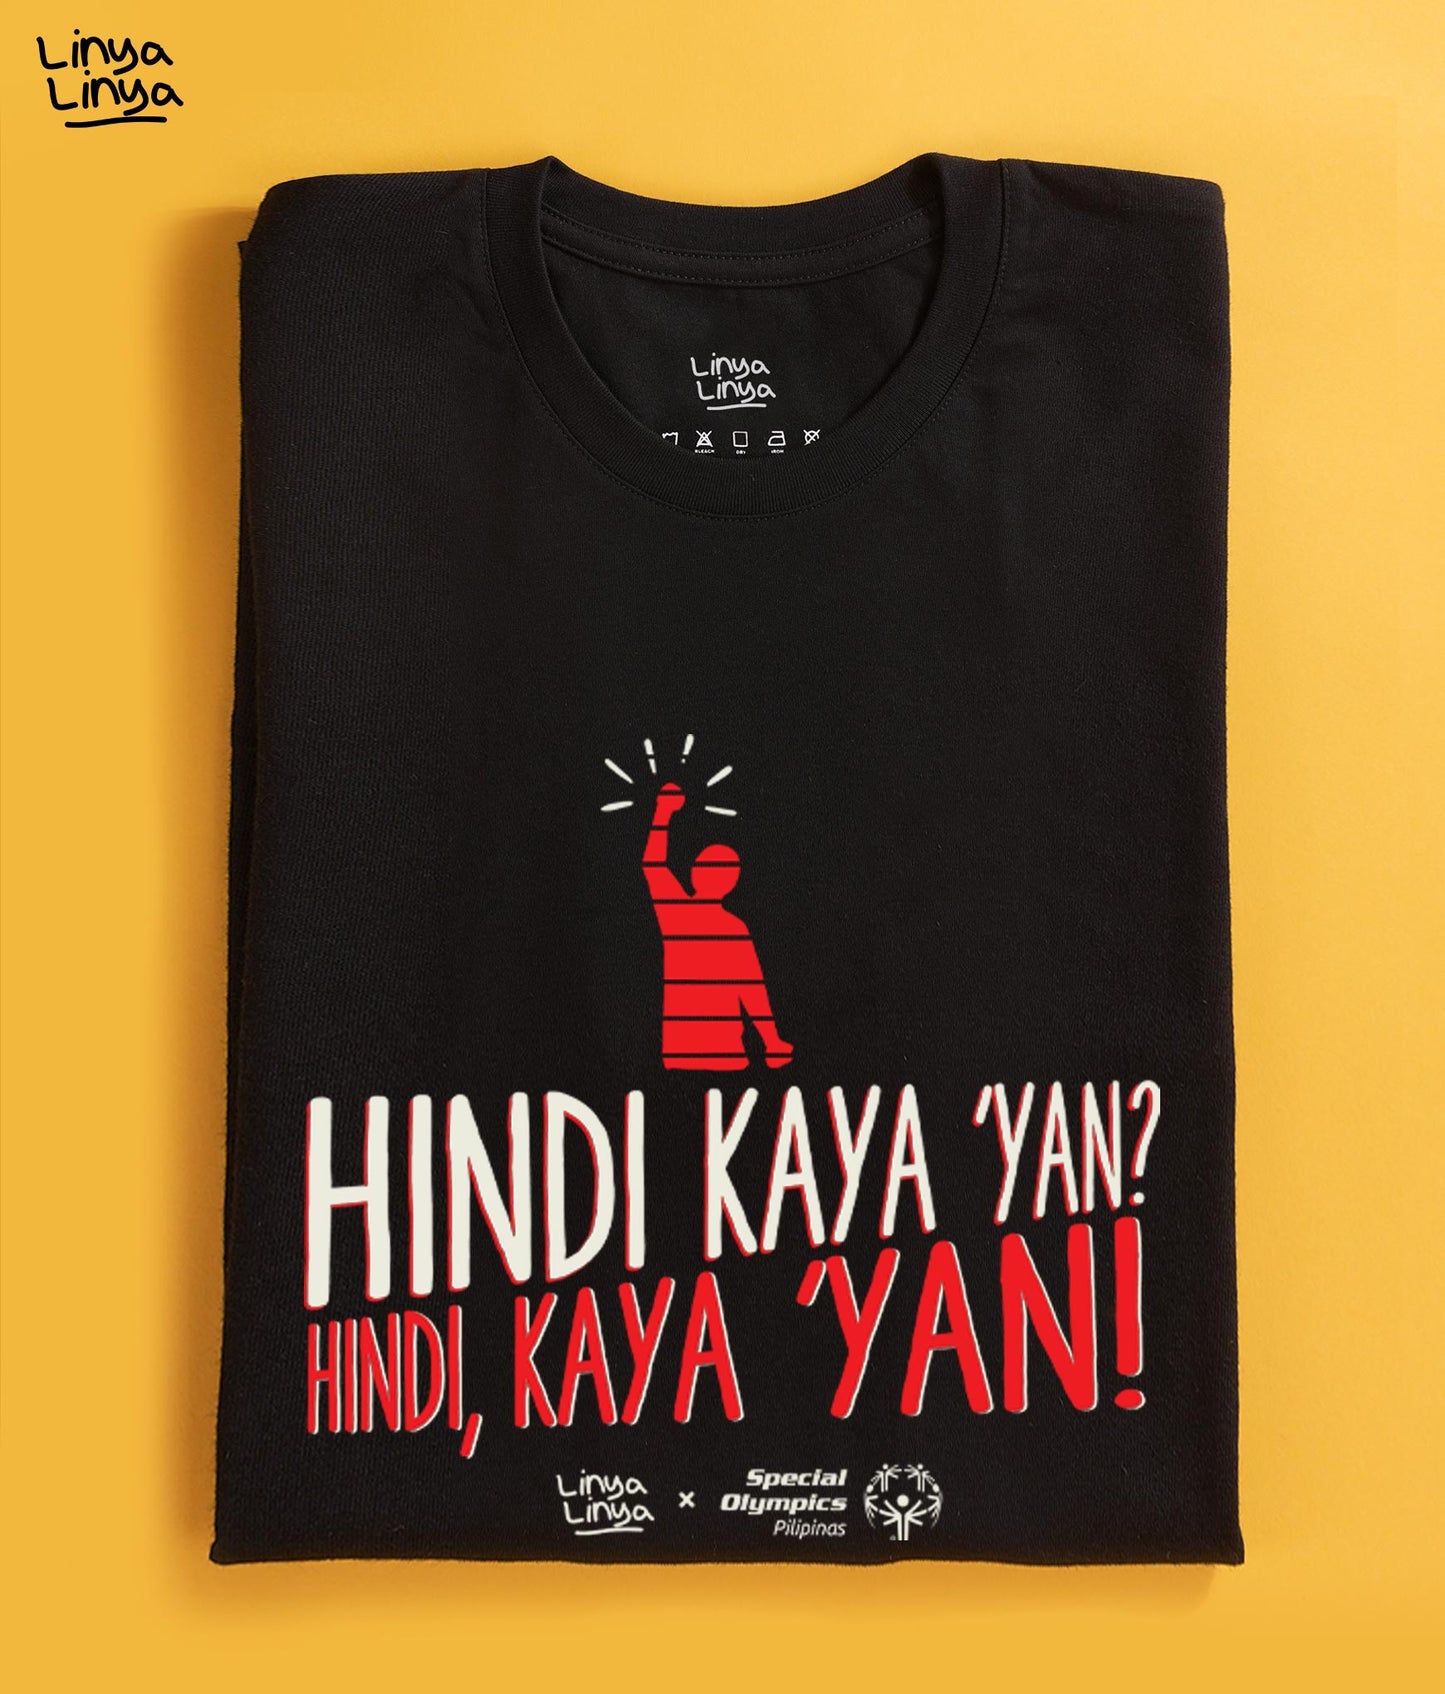 Linya-Linya x Special Olympics Pilipinas: Hindi Kaya 'Yan? Hindi, Kaya 'Yan!  (Black)